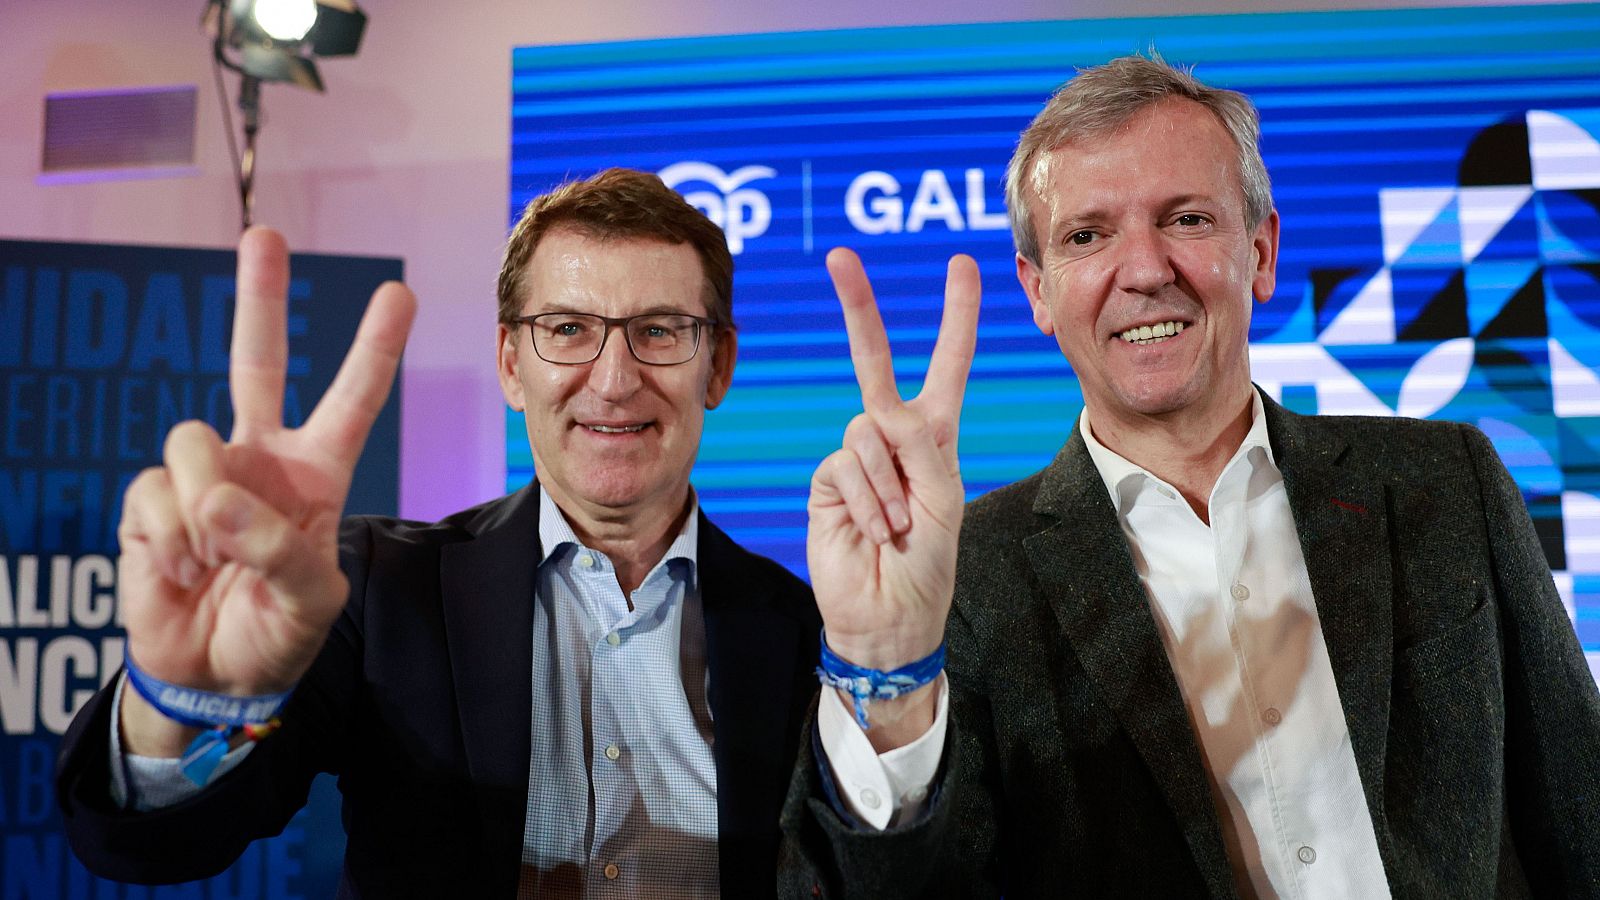 Elecciones Galicia | Feijóo: "Concentrar el voto en el PP frena el independentismo"